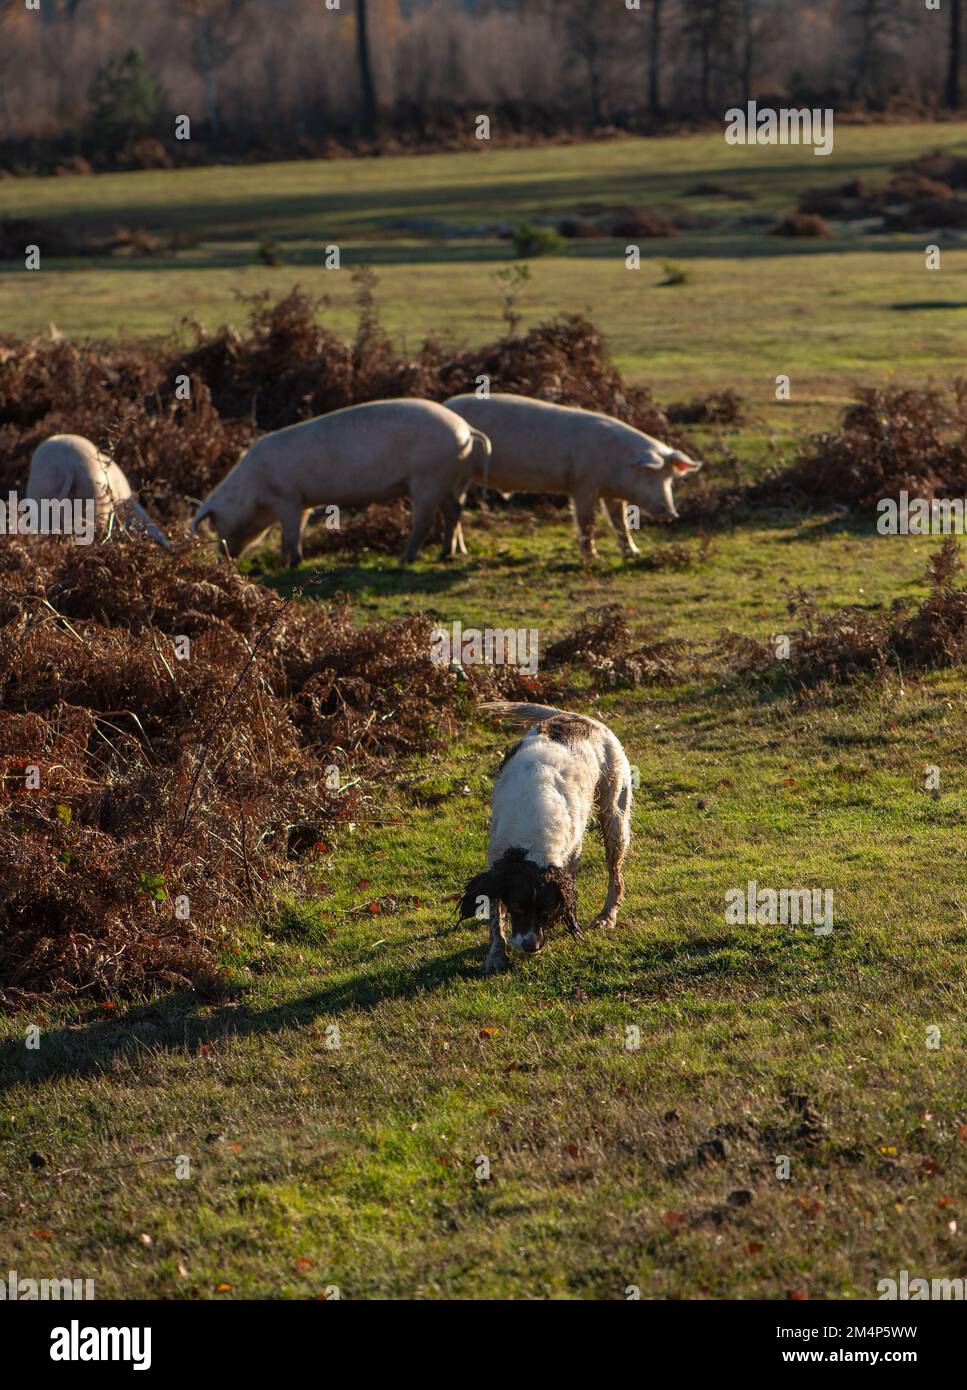 Un chien de travail bien formé et des porcs bien élevés coexistent heureusement pendant les saisons de pannage dans le New Forest Hampshire Royaume-Uni Banque D'Images